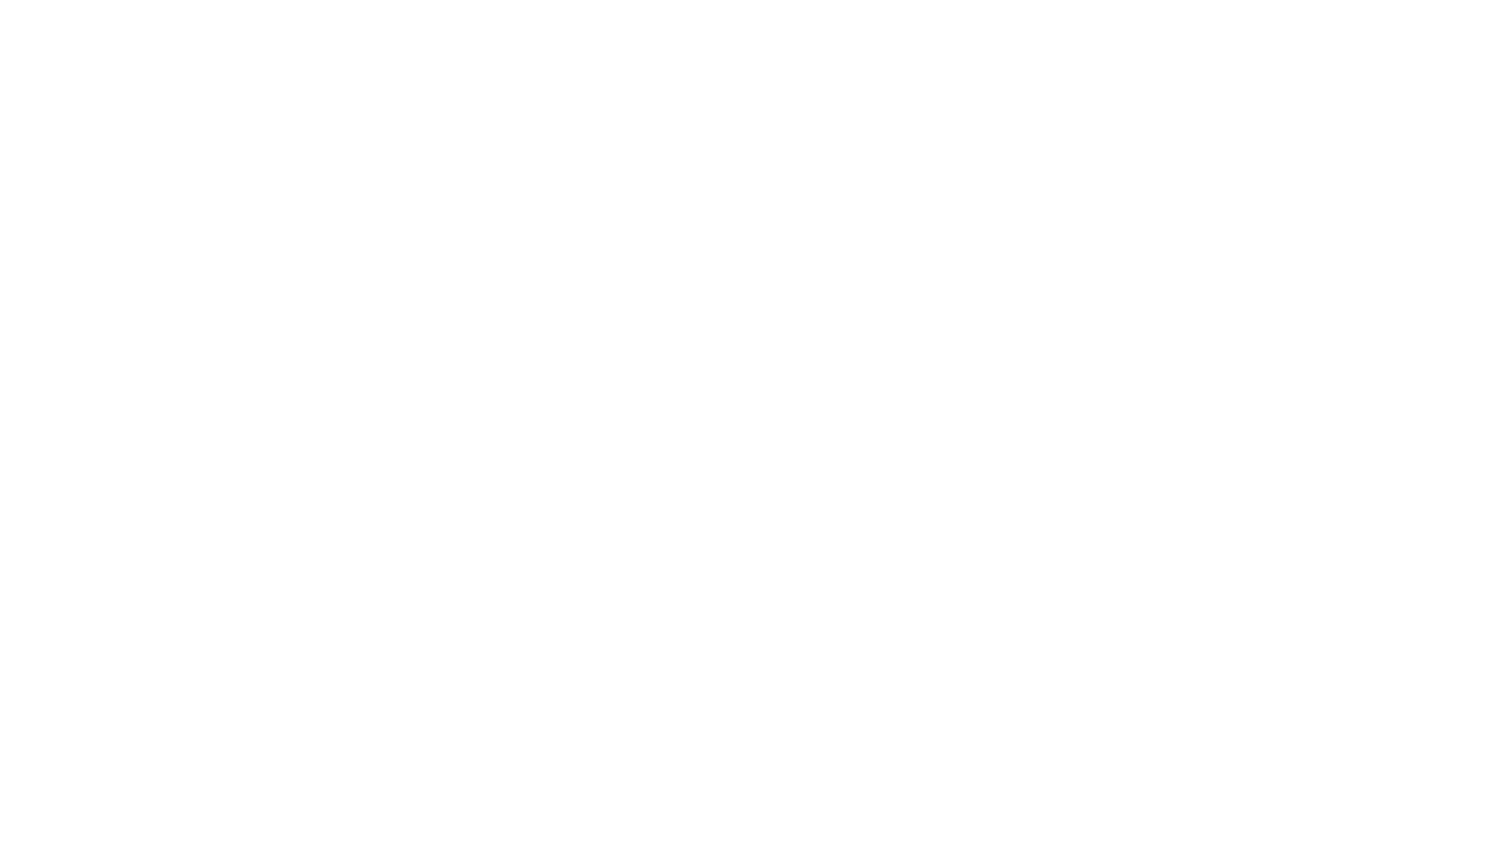 Vidalia Immediate and Primary Care